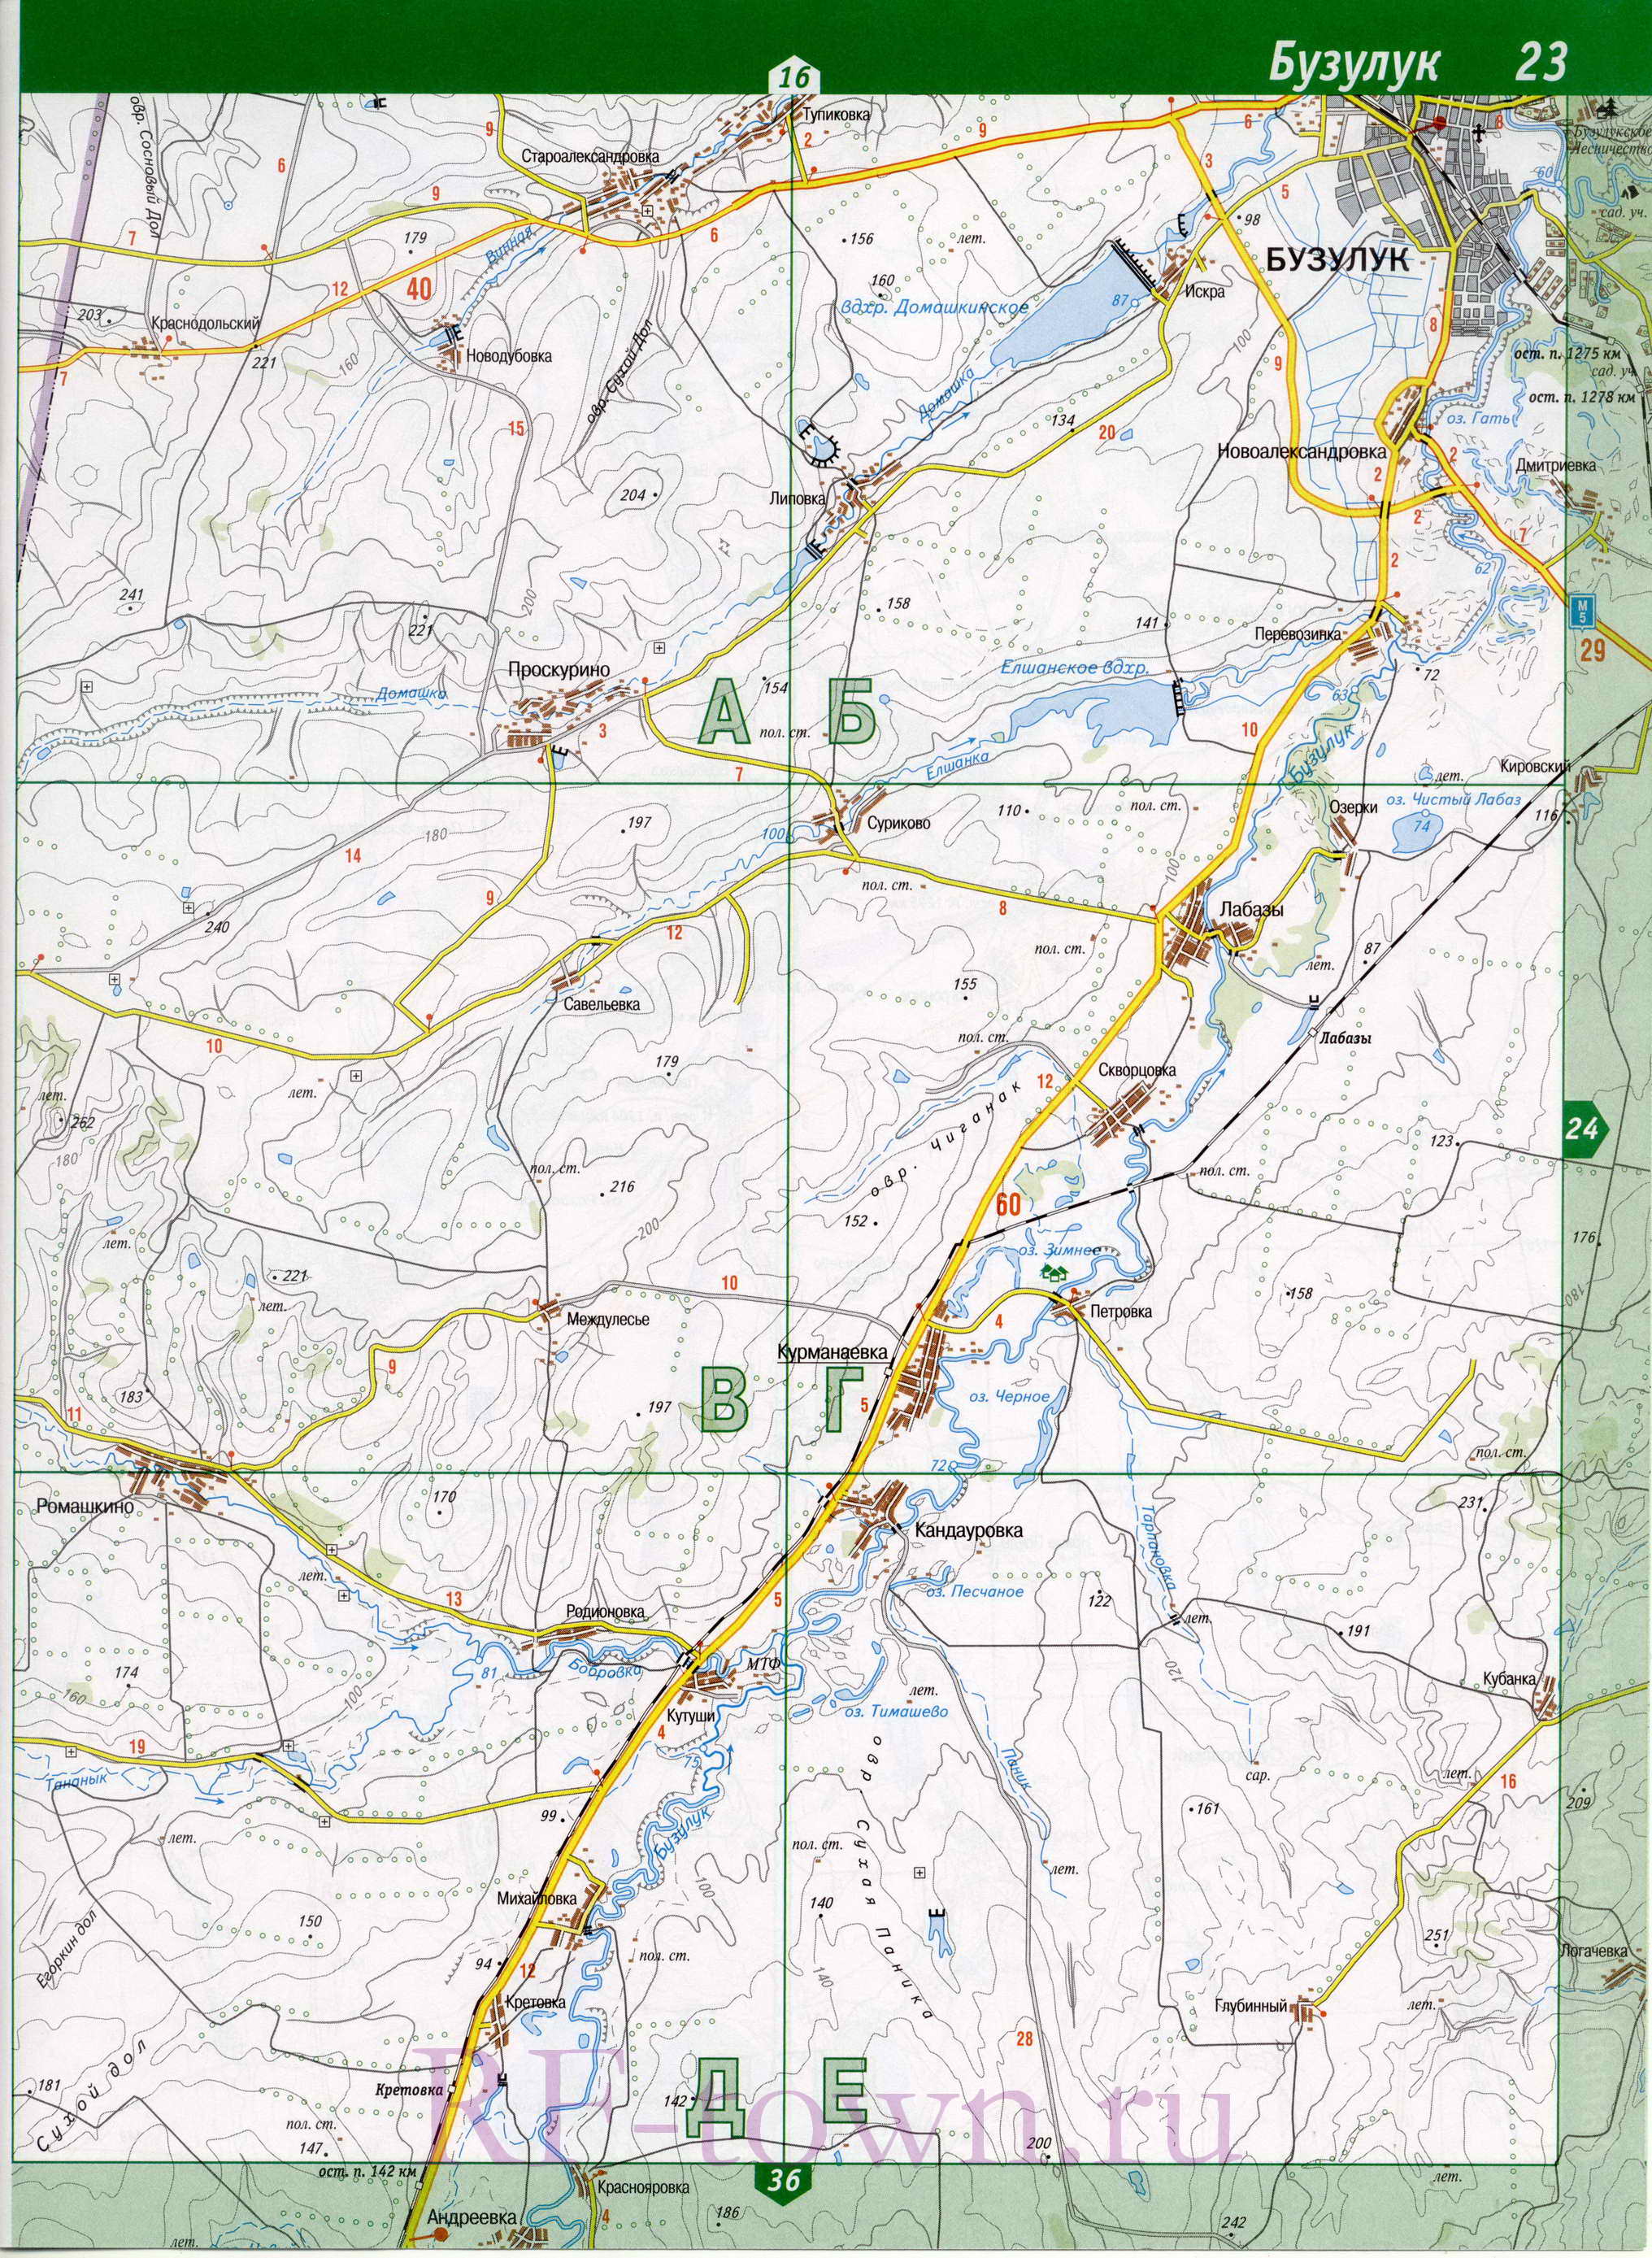 Карта Бузулукского района Оренбургской области. Подробная карта - Бузулукский район, A1 - 